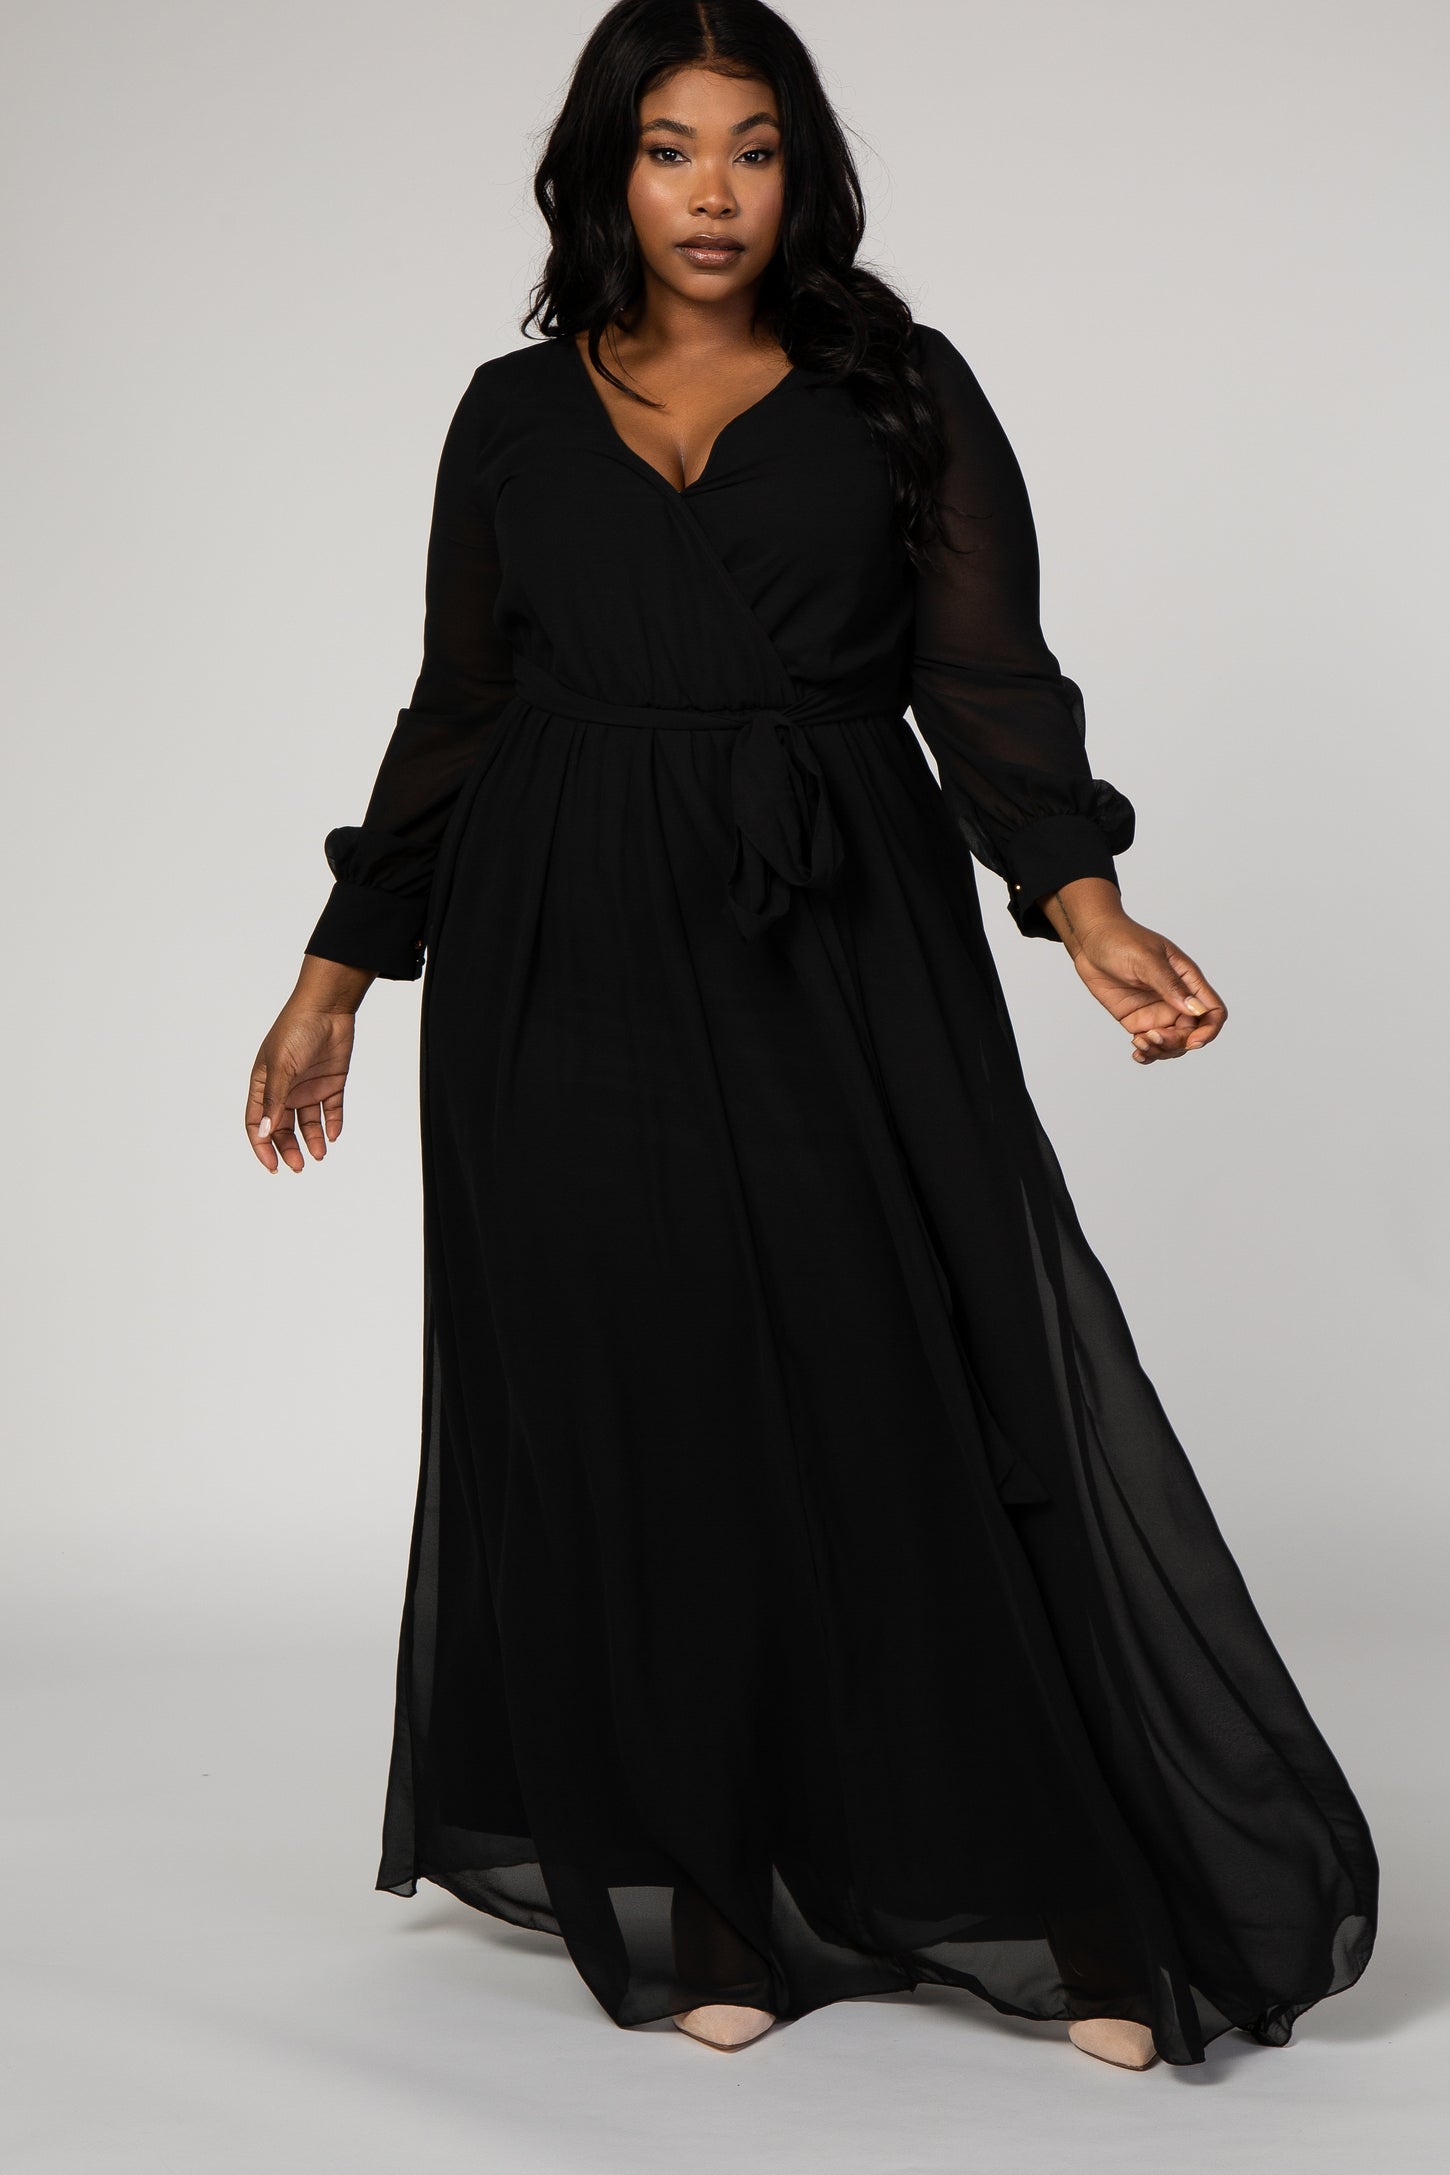 Black Chiffon Long Sleeve Pleated Plus Maternity Maxi Dress– PinkBlush